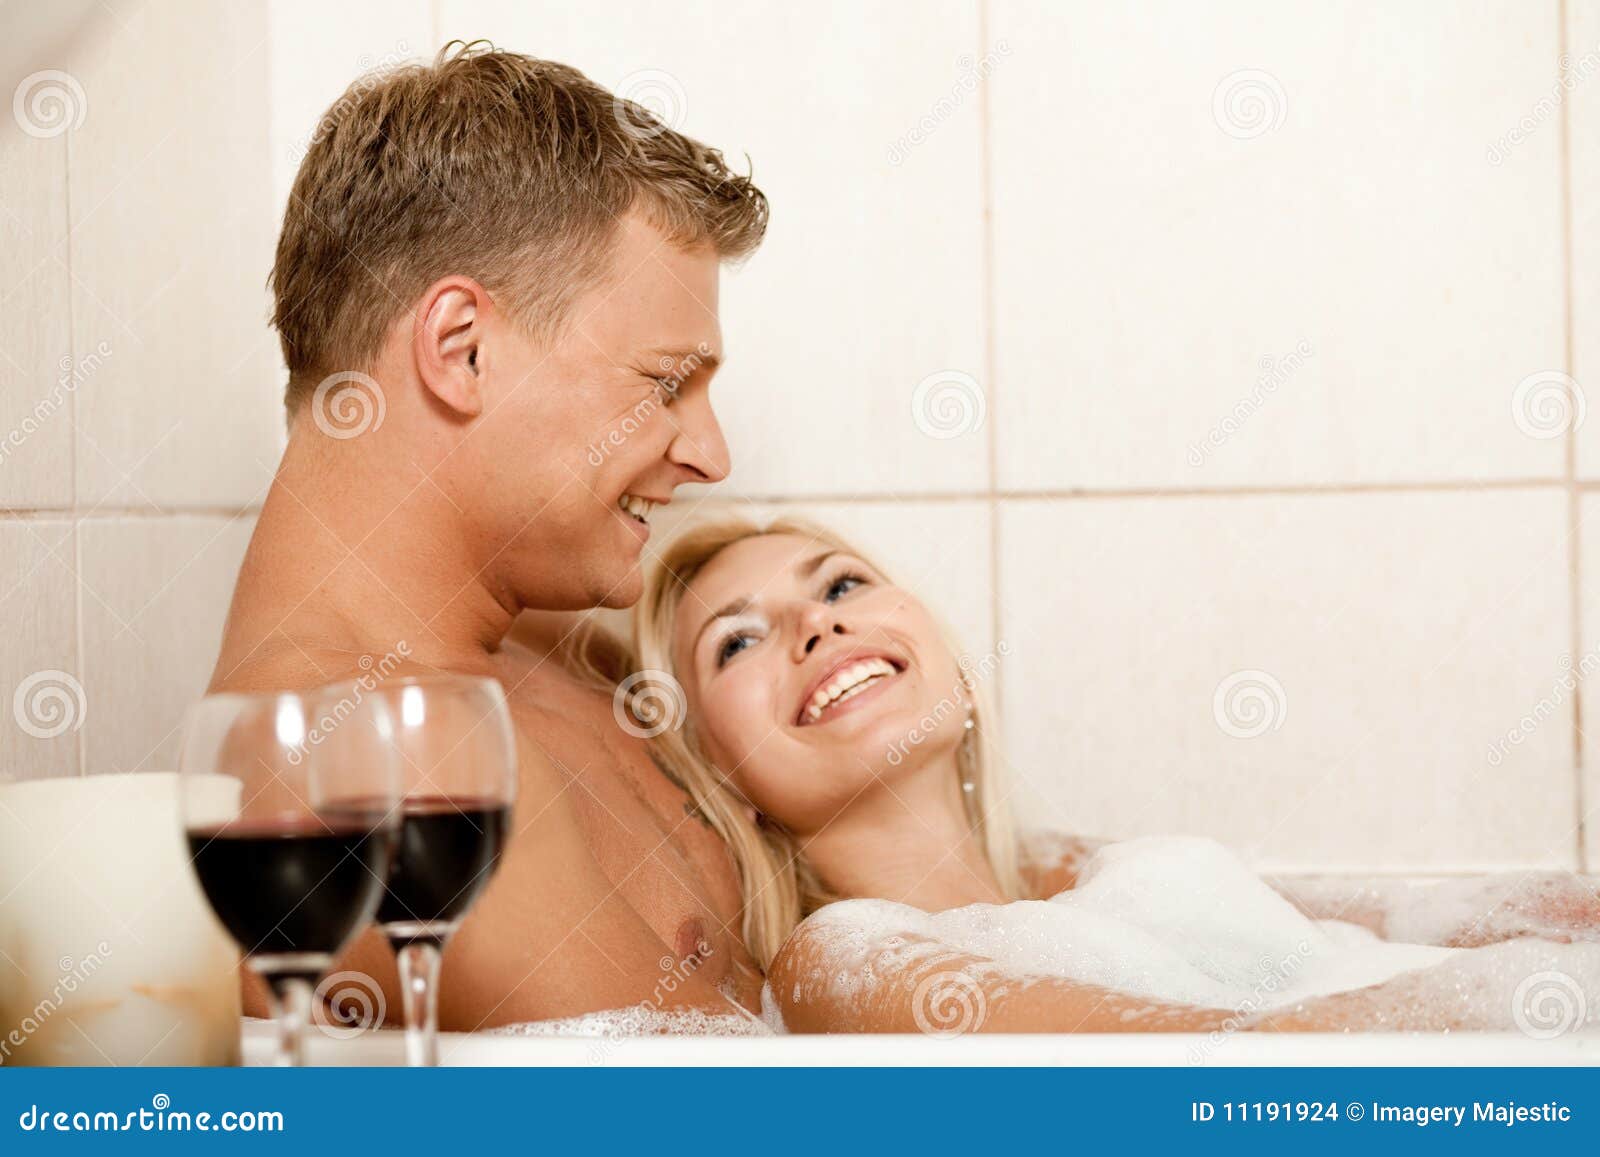 Жена с другом в ванной. Мужчина и женщина в ванне. Влюбленные в ванной. В ванной вдвоем. Любовь в джакузи.